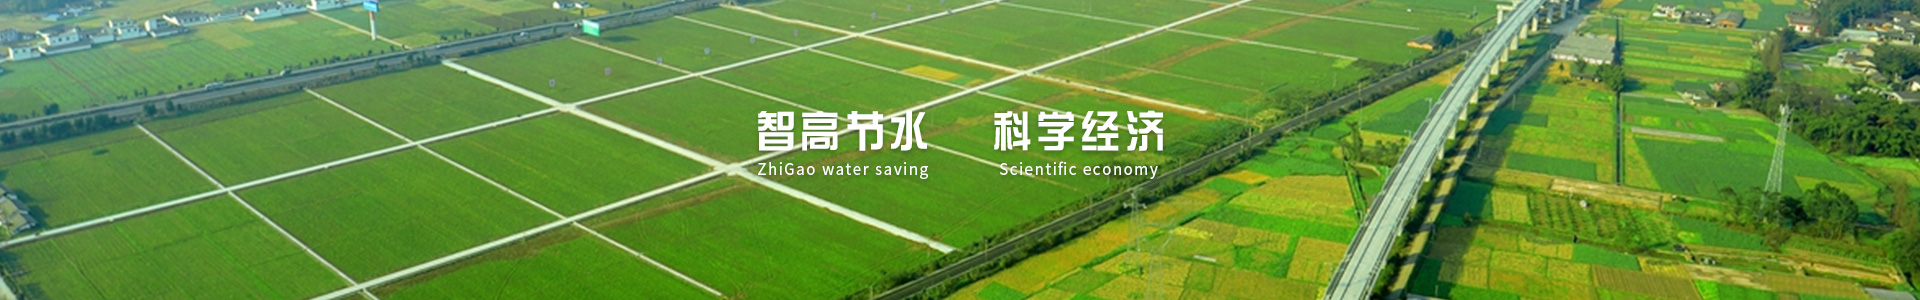 西安智能灌溉,西安节水灌溉,西安灌溉设备